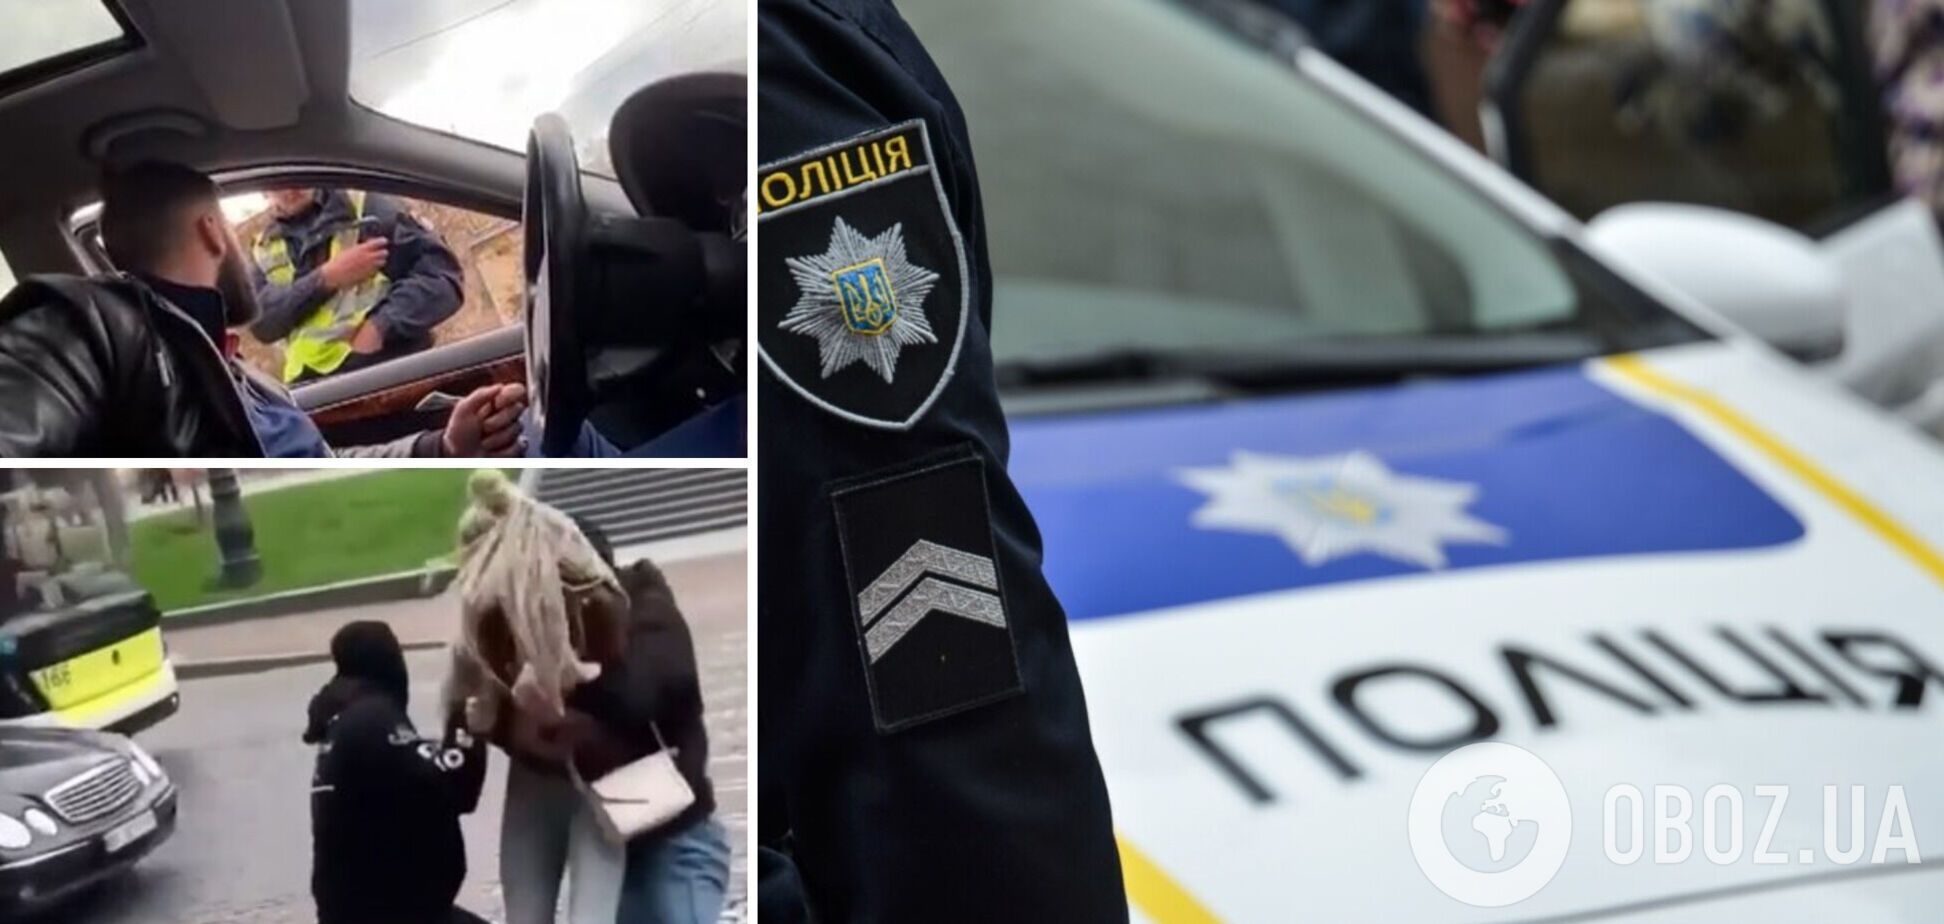 Во Львове посреди улицы схватили и затолкали в авто девушку: ''похищение'' оказалось розыгрышем. Видео